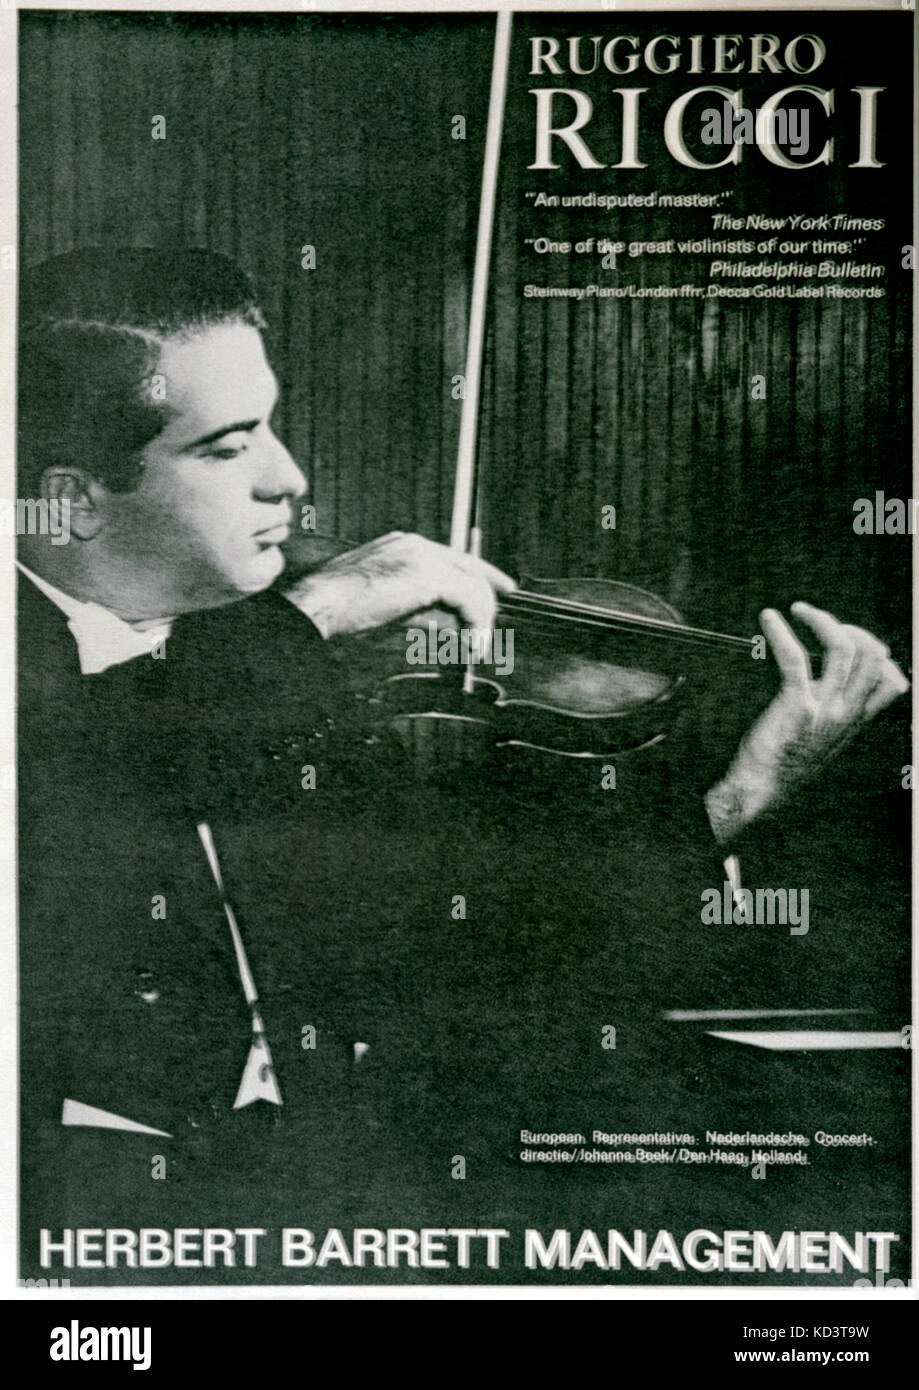 RICCI, Ruggiero - Porträt - Junge - spielen Geige Werbung für Herbert Barrett Management - Musikalische Amerika Dez, 1963 amerikanische Geigerin, 1918 - Stockfoto